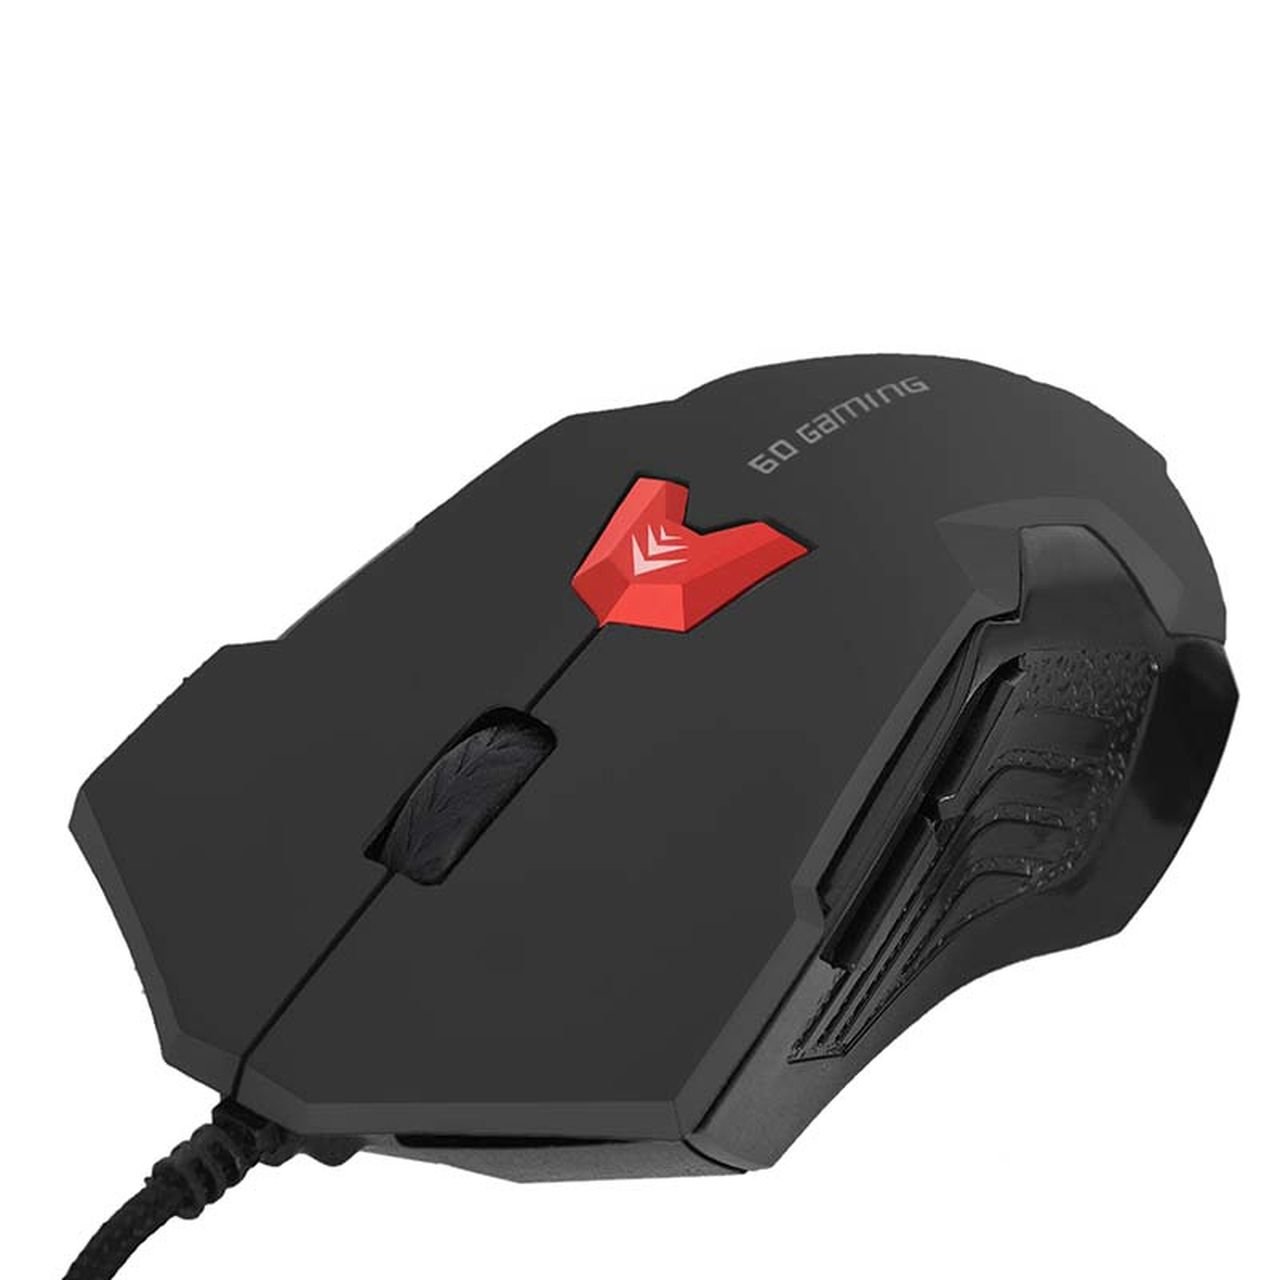 Mouse Gamer Bright 0462 2400dpi Usb 6 Botões - Preto